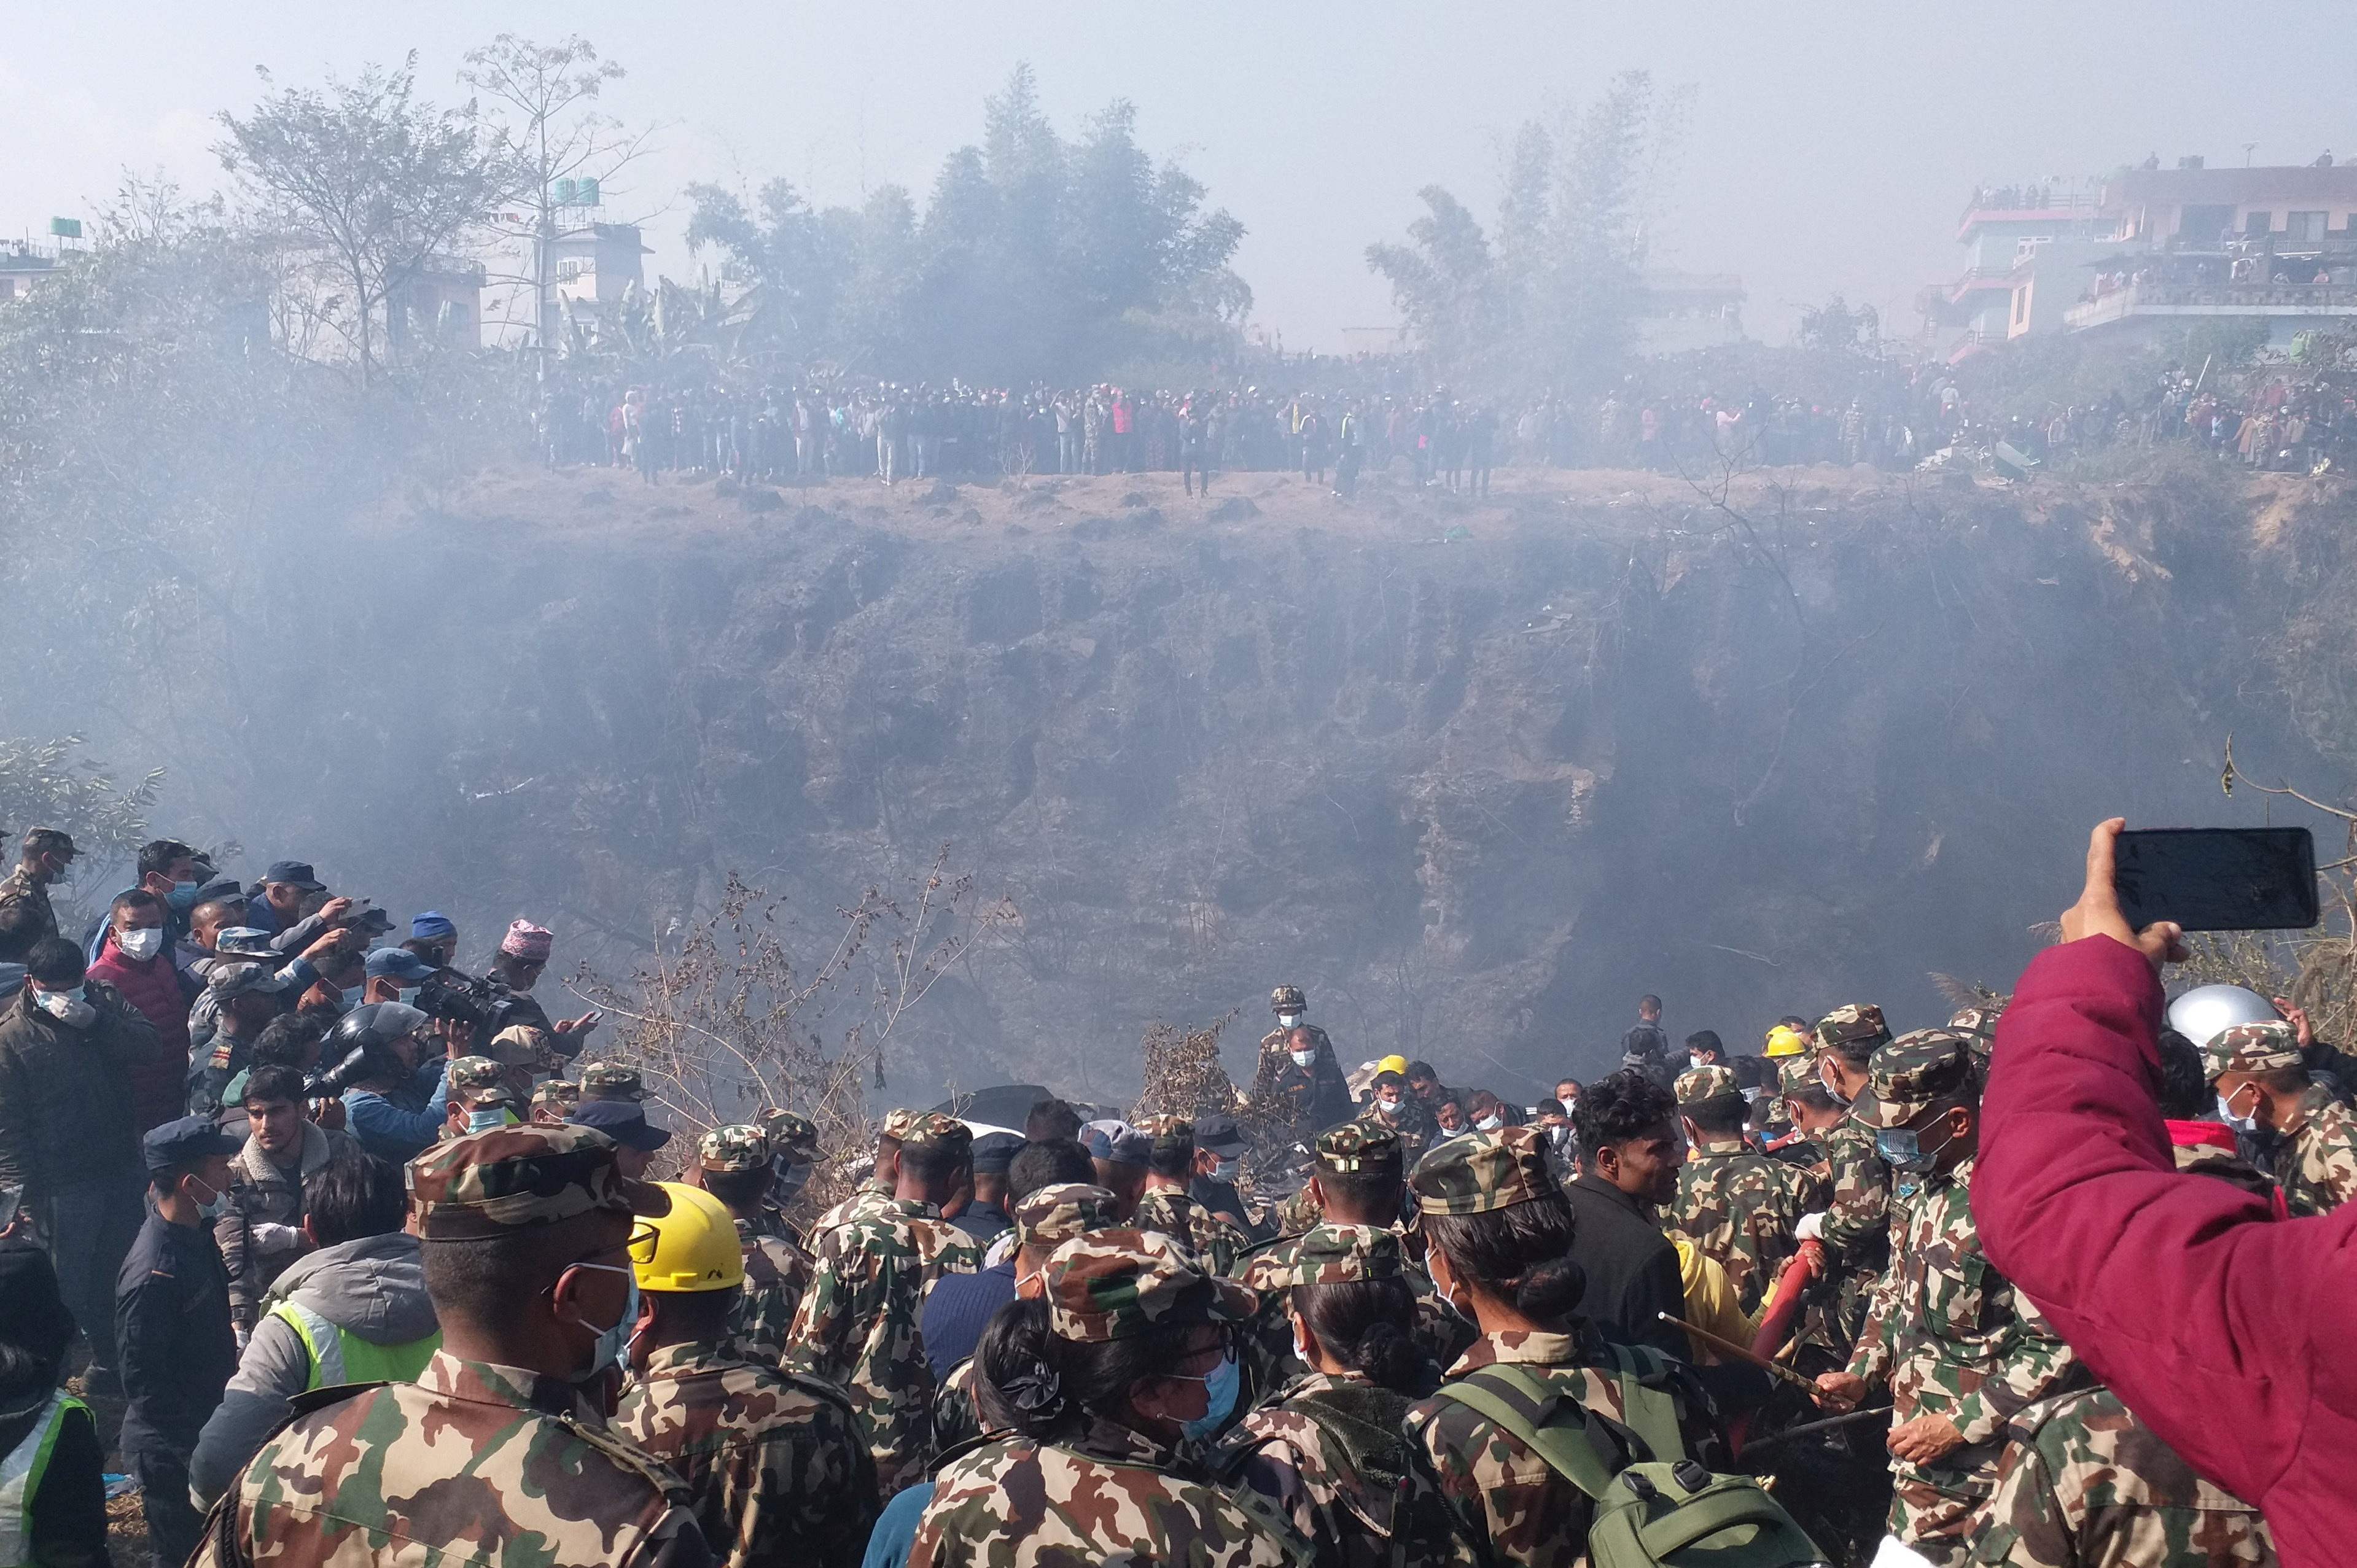 Las autoridades nepalíes han recuperado al menos 25 cadáveres tras el siniestro, indicó el subinspector adjunto de la Policía nepalí, Rudra Thapa. (REUTERS)